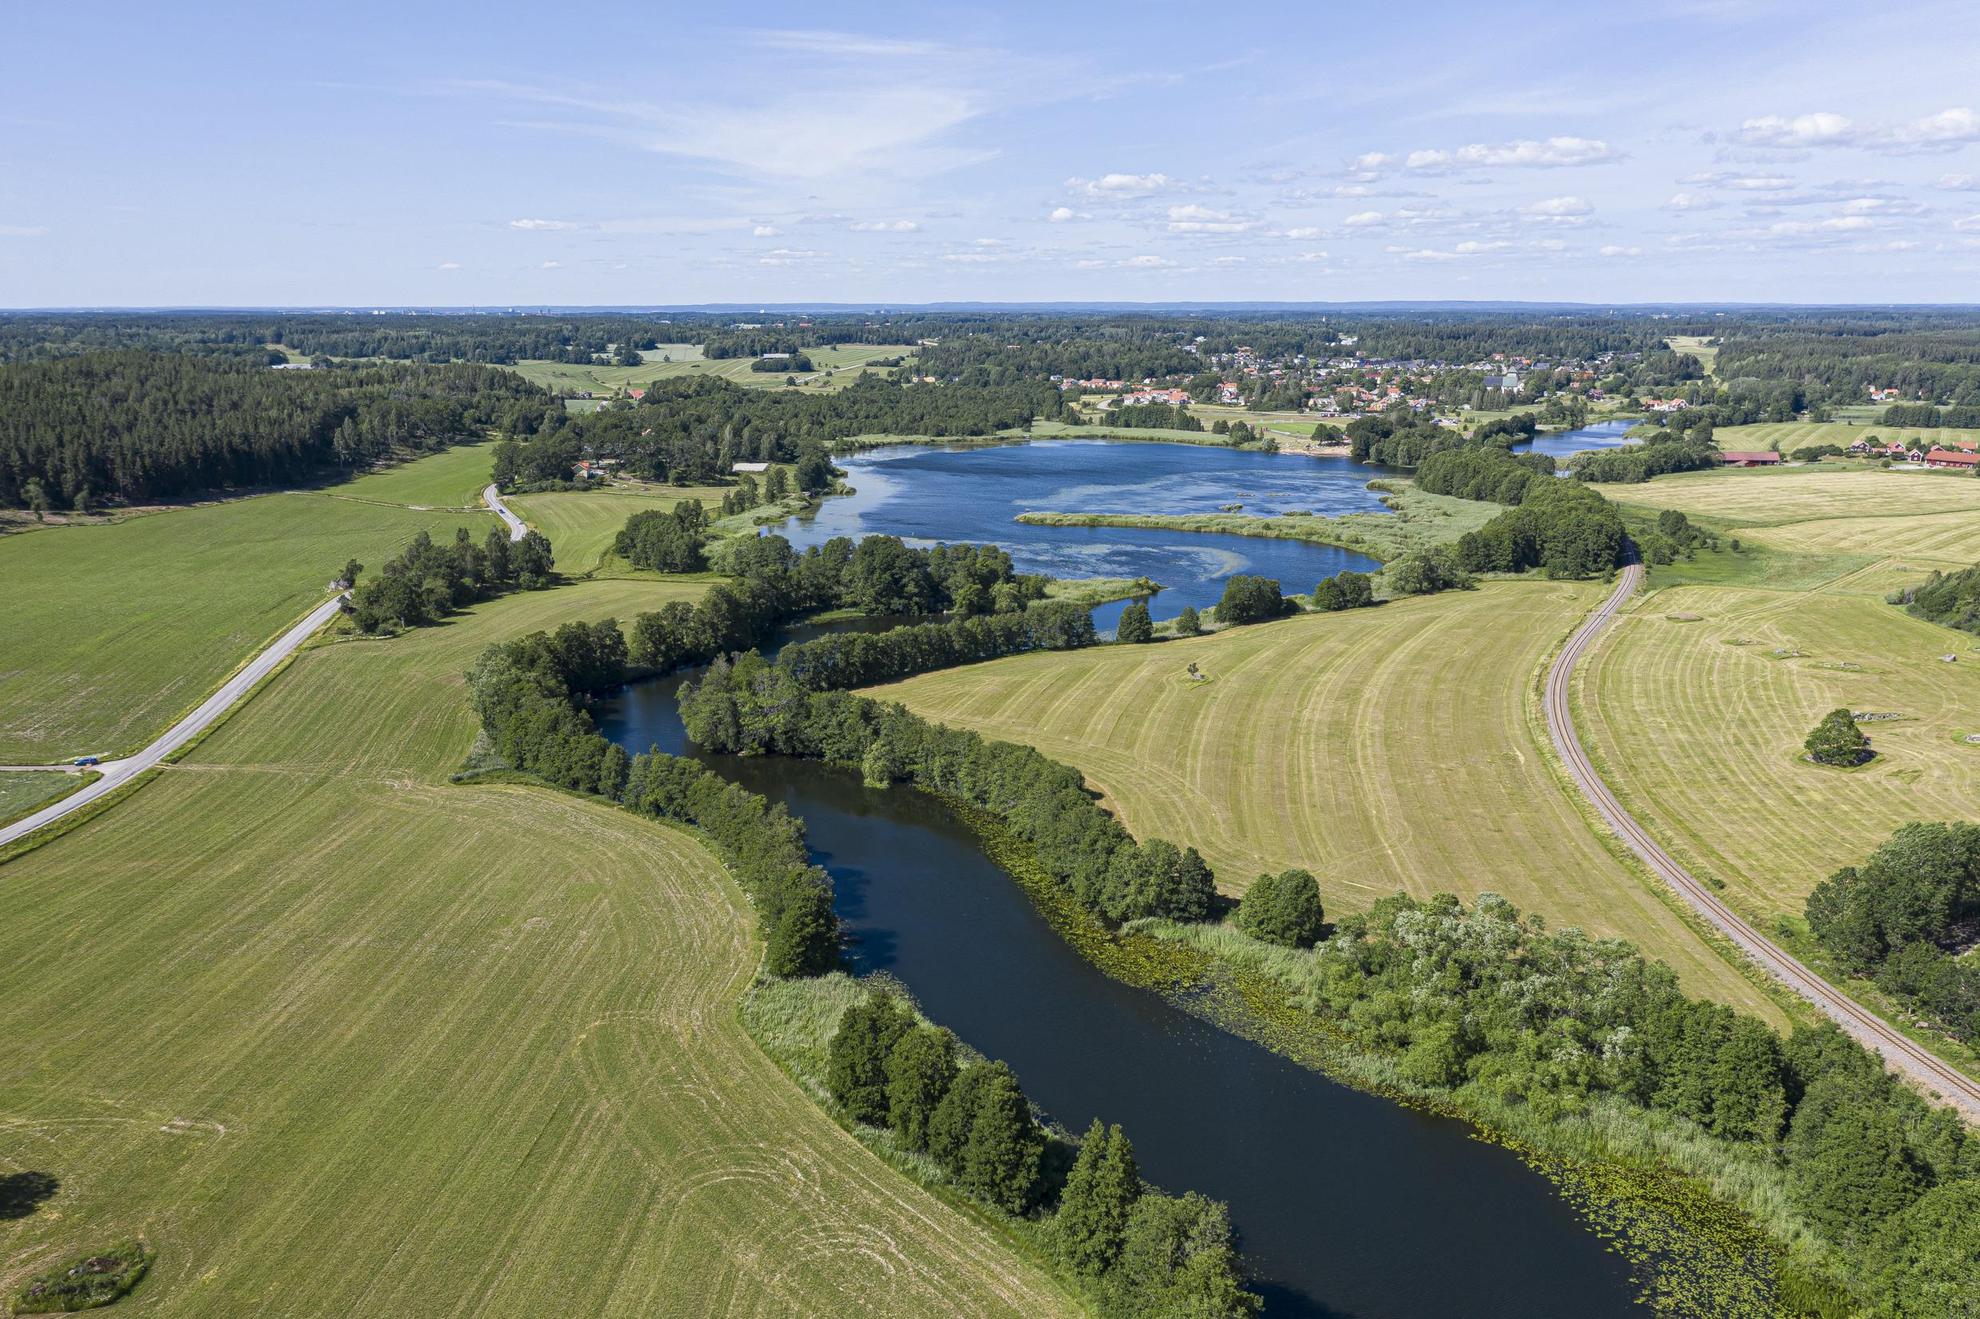 Vue aérienne d'une rivière qui serpente à travers des champs verdoyants et des arbres.